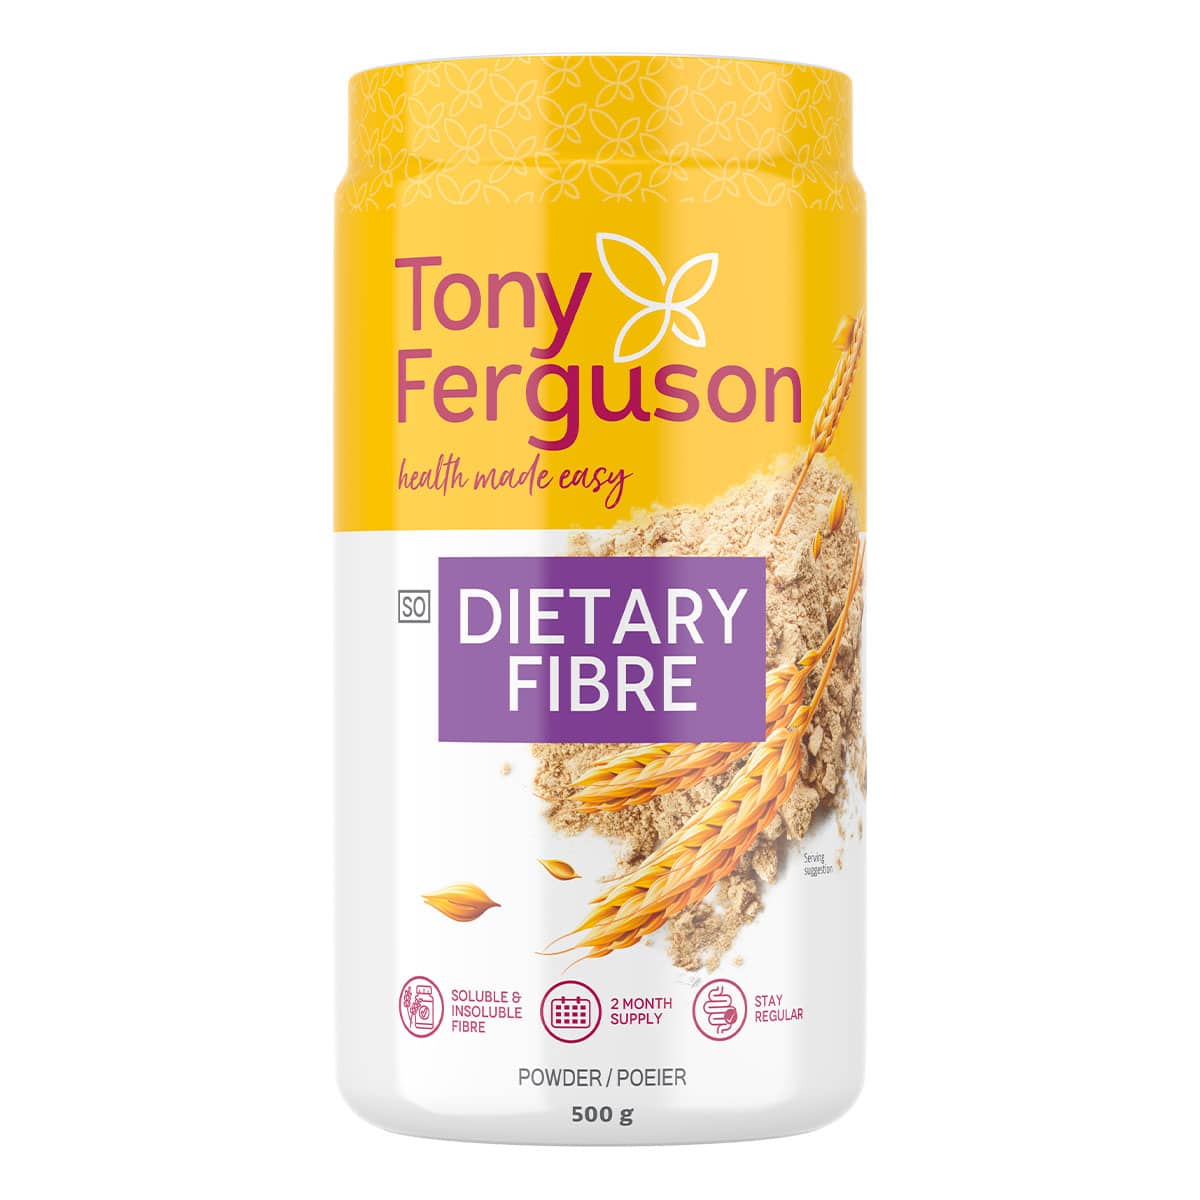 Tony Ferguson Dietary Fibre Powder - 500g